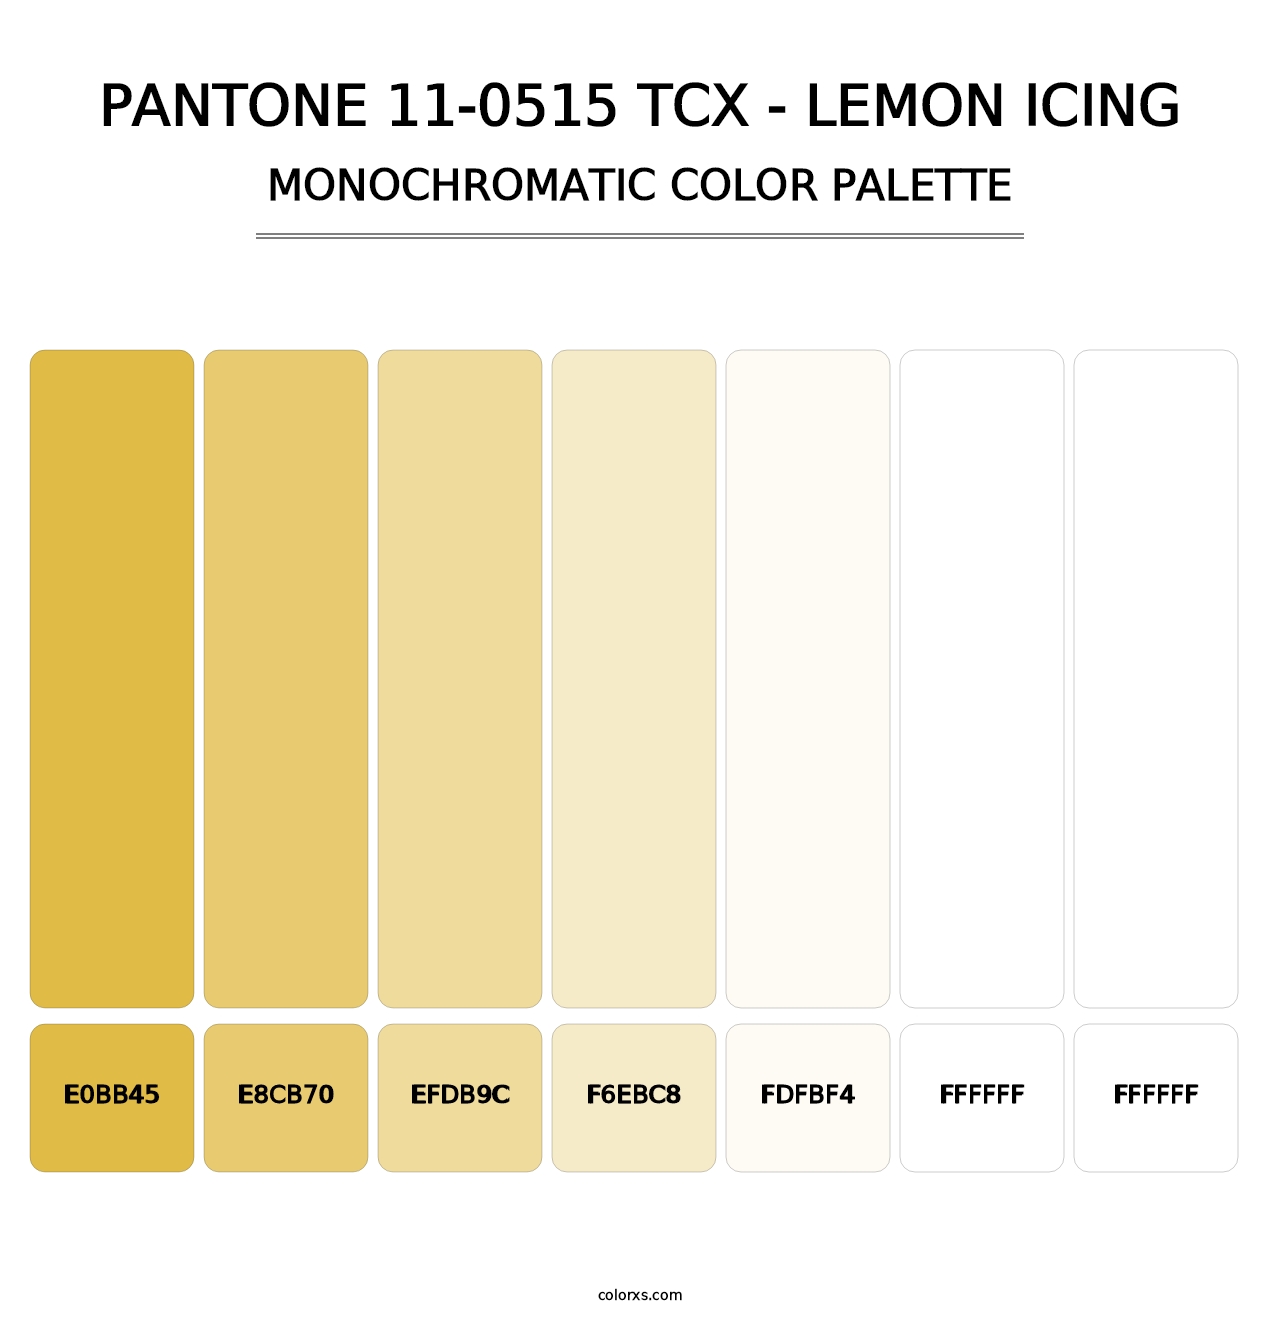 PANTONE 11-0515 TCX - Lemon Icing - Monochromatic Color Palette